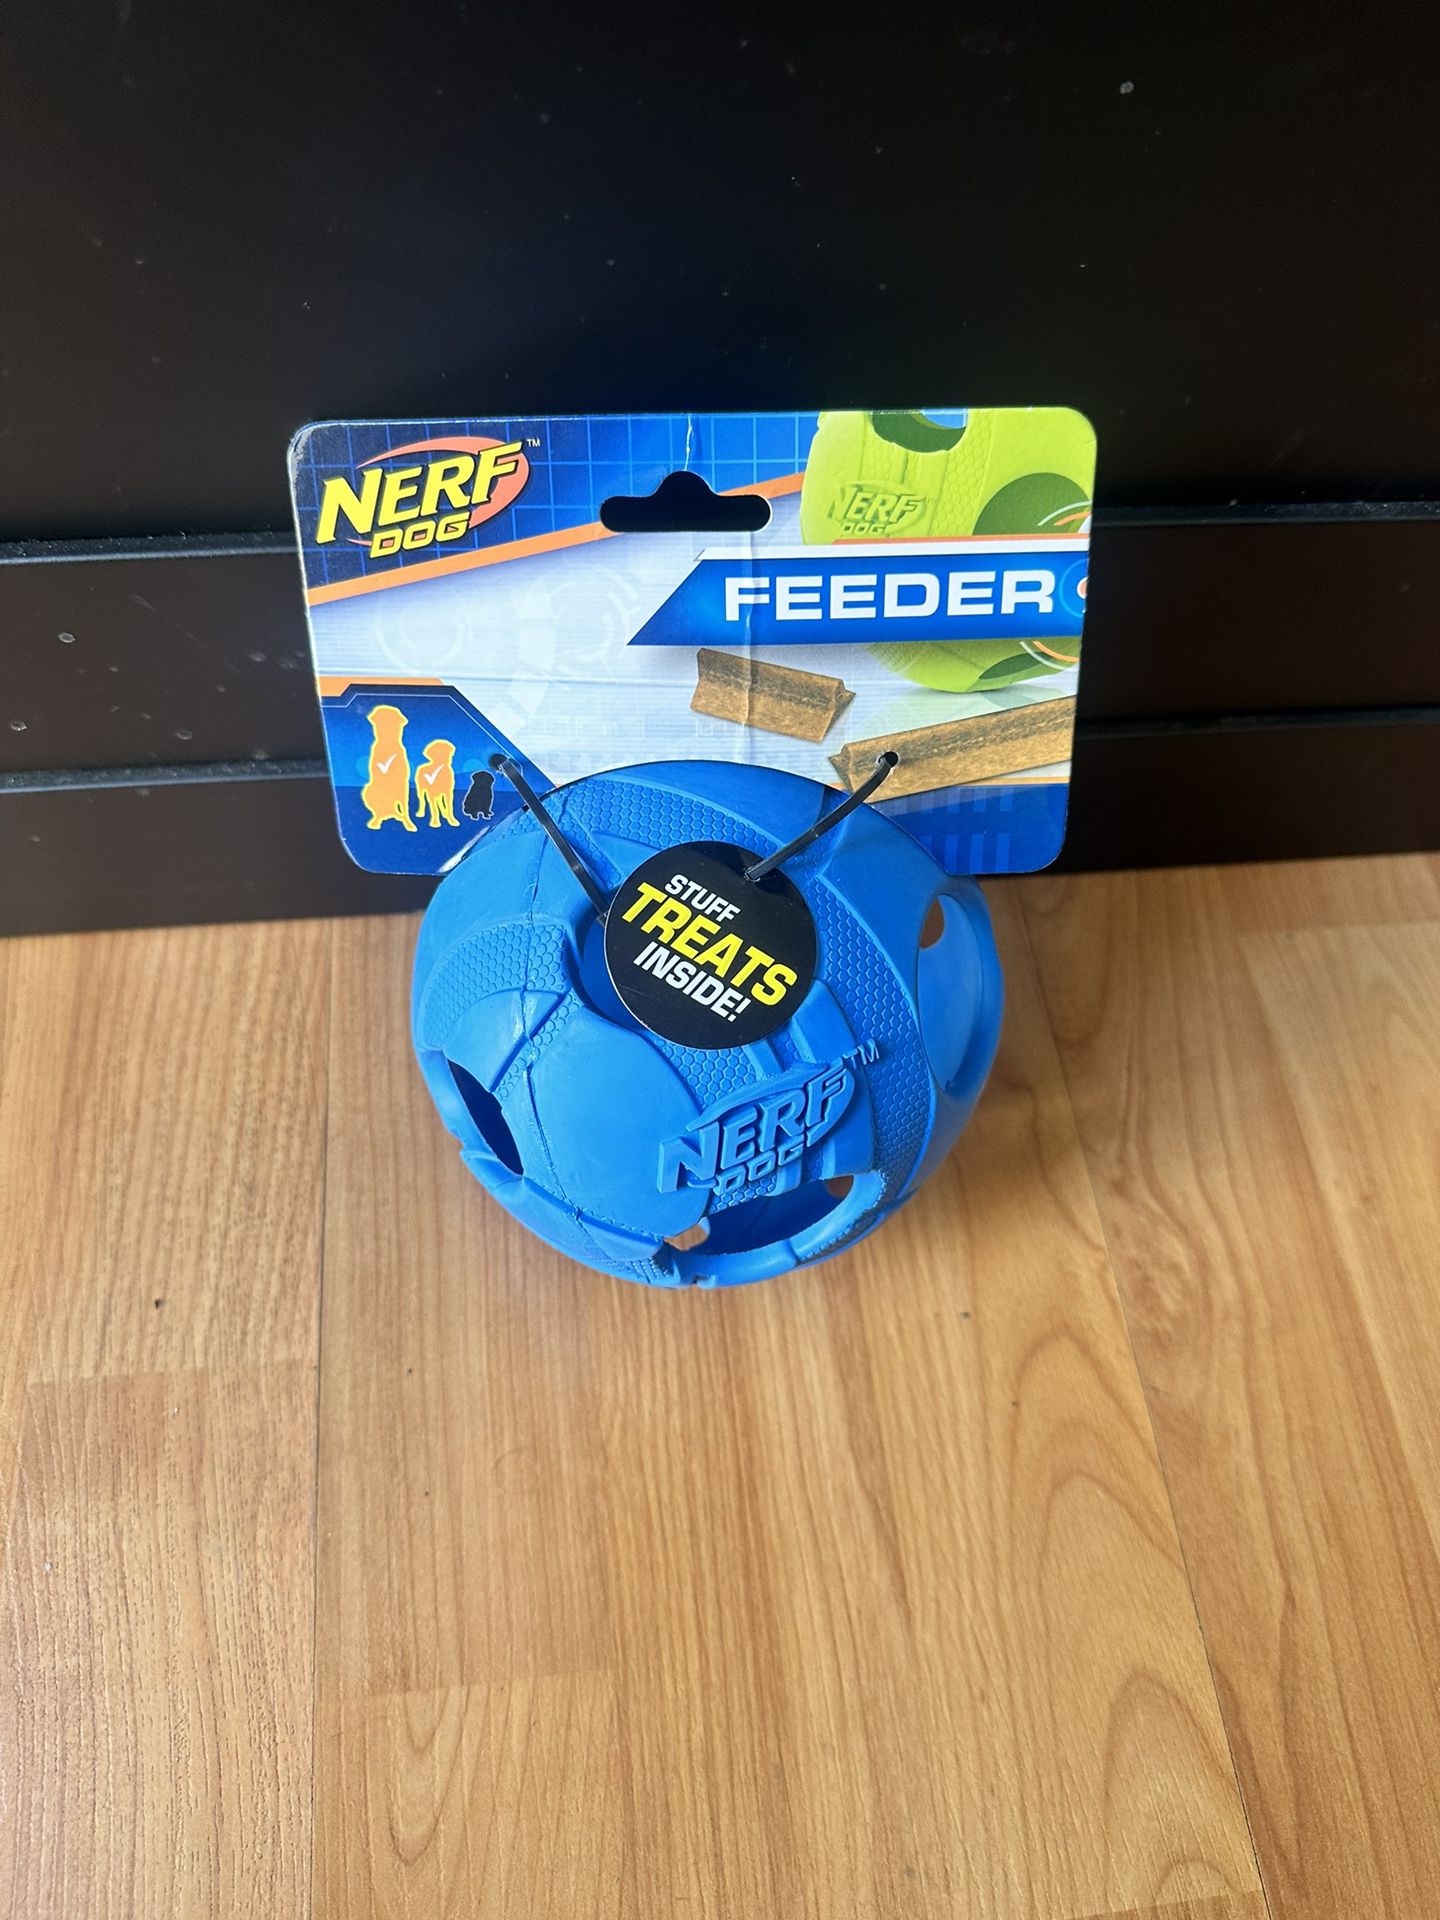 brand new nerf dog toy feeder